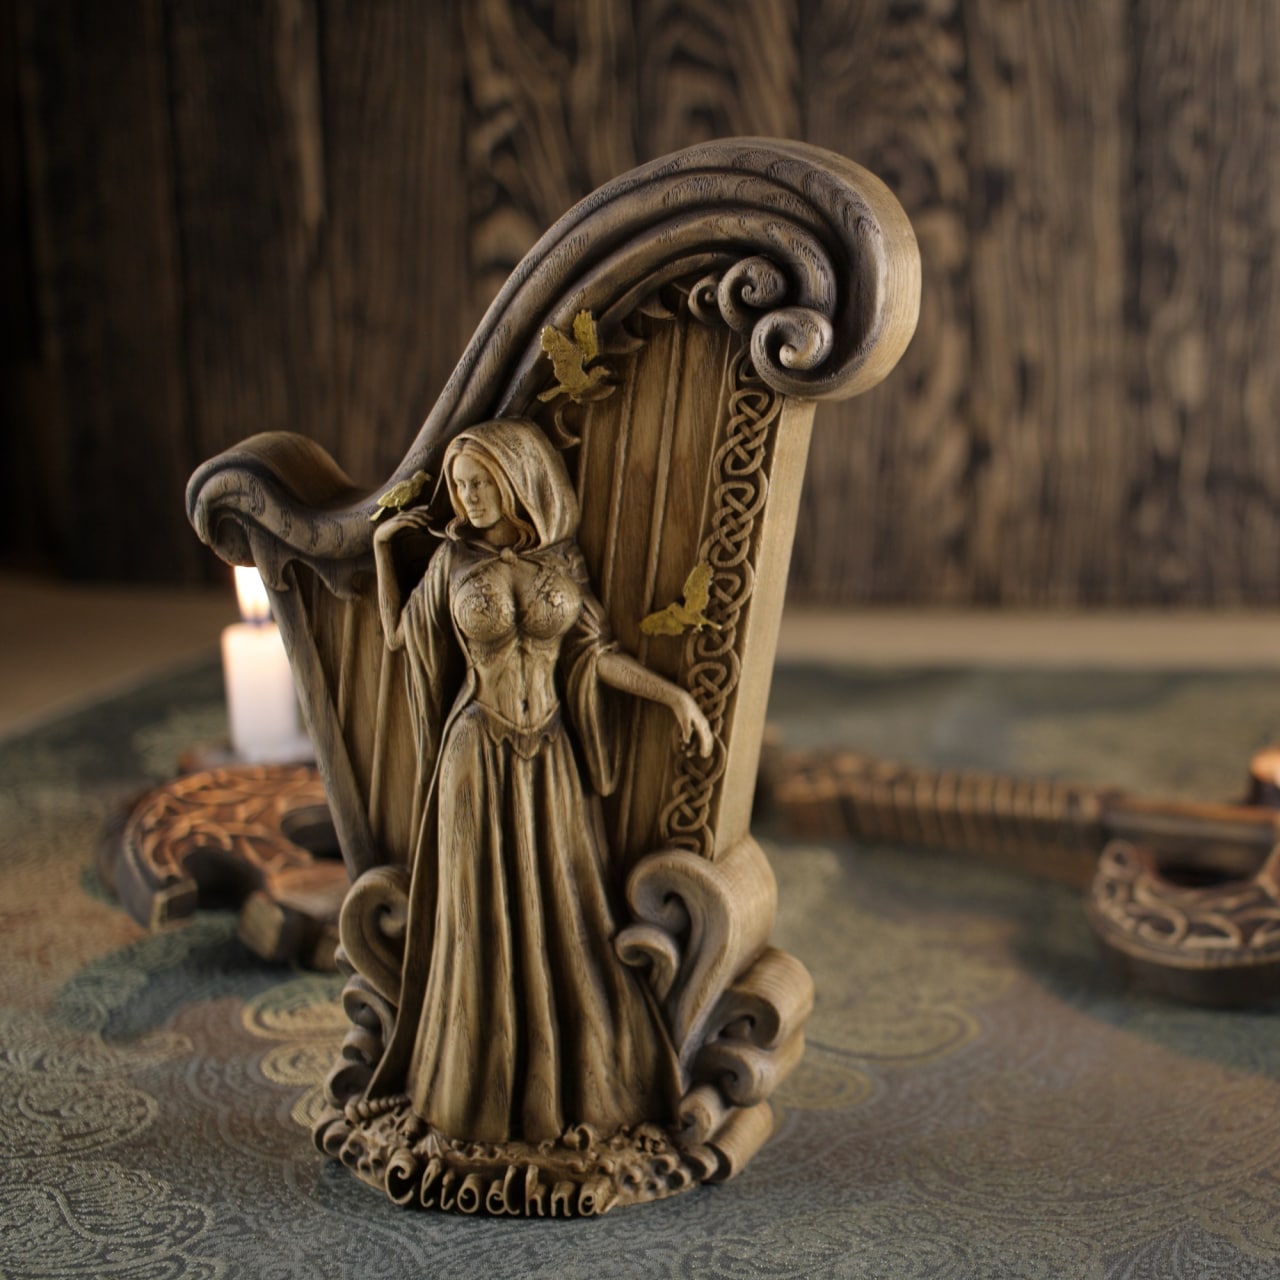 Wooden Cliodhna Statue - Celtic Goddess Sculpture